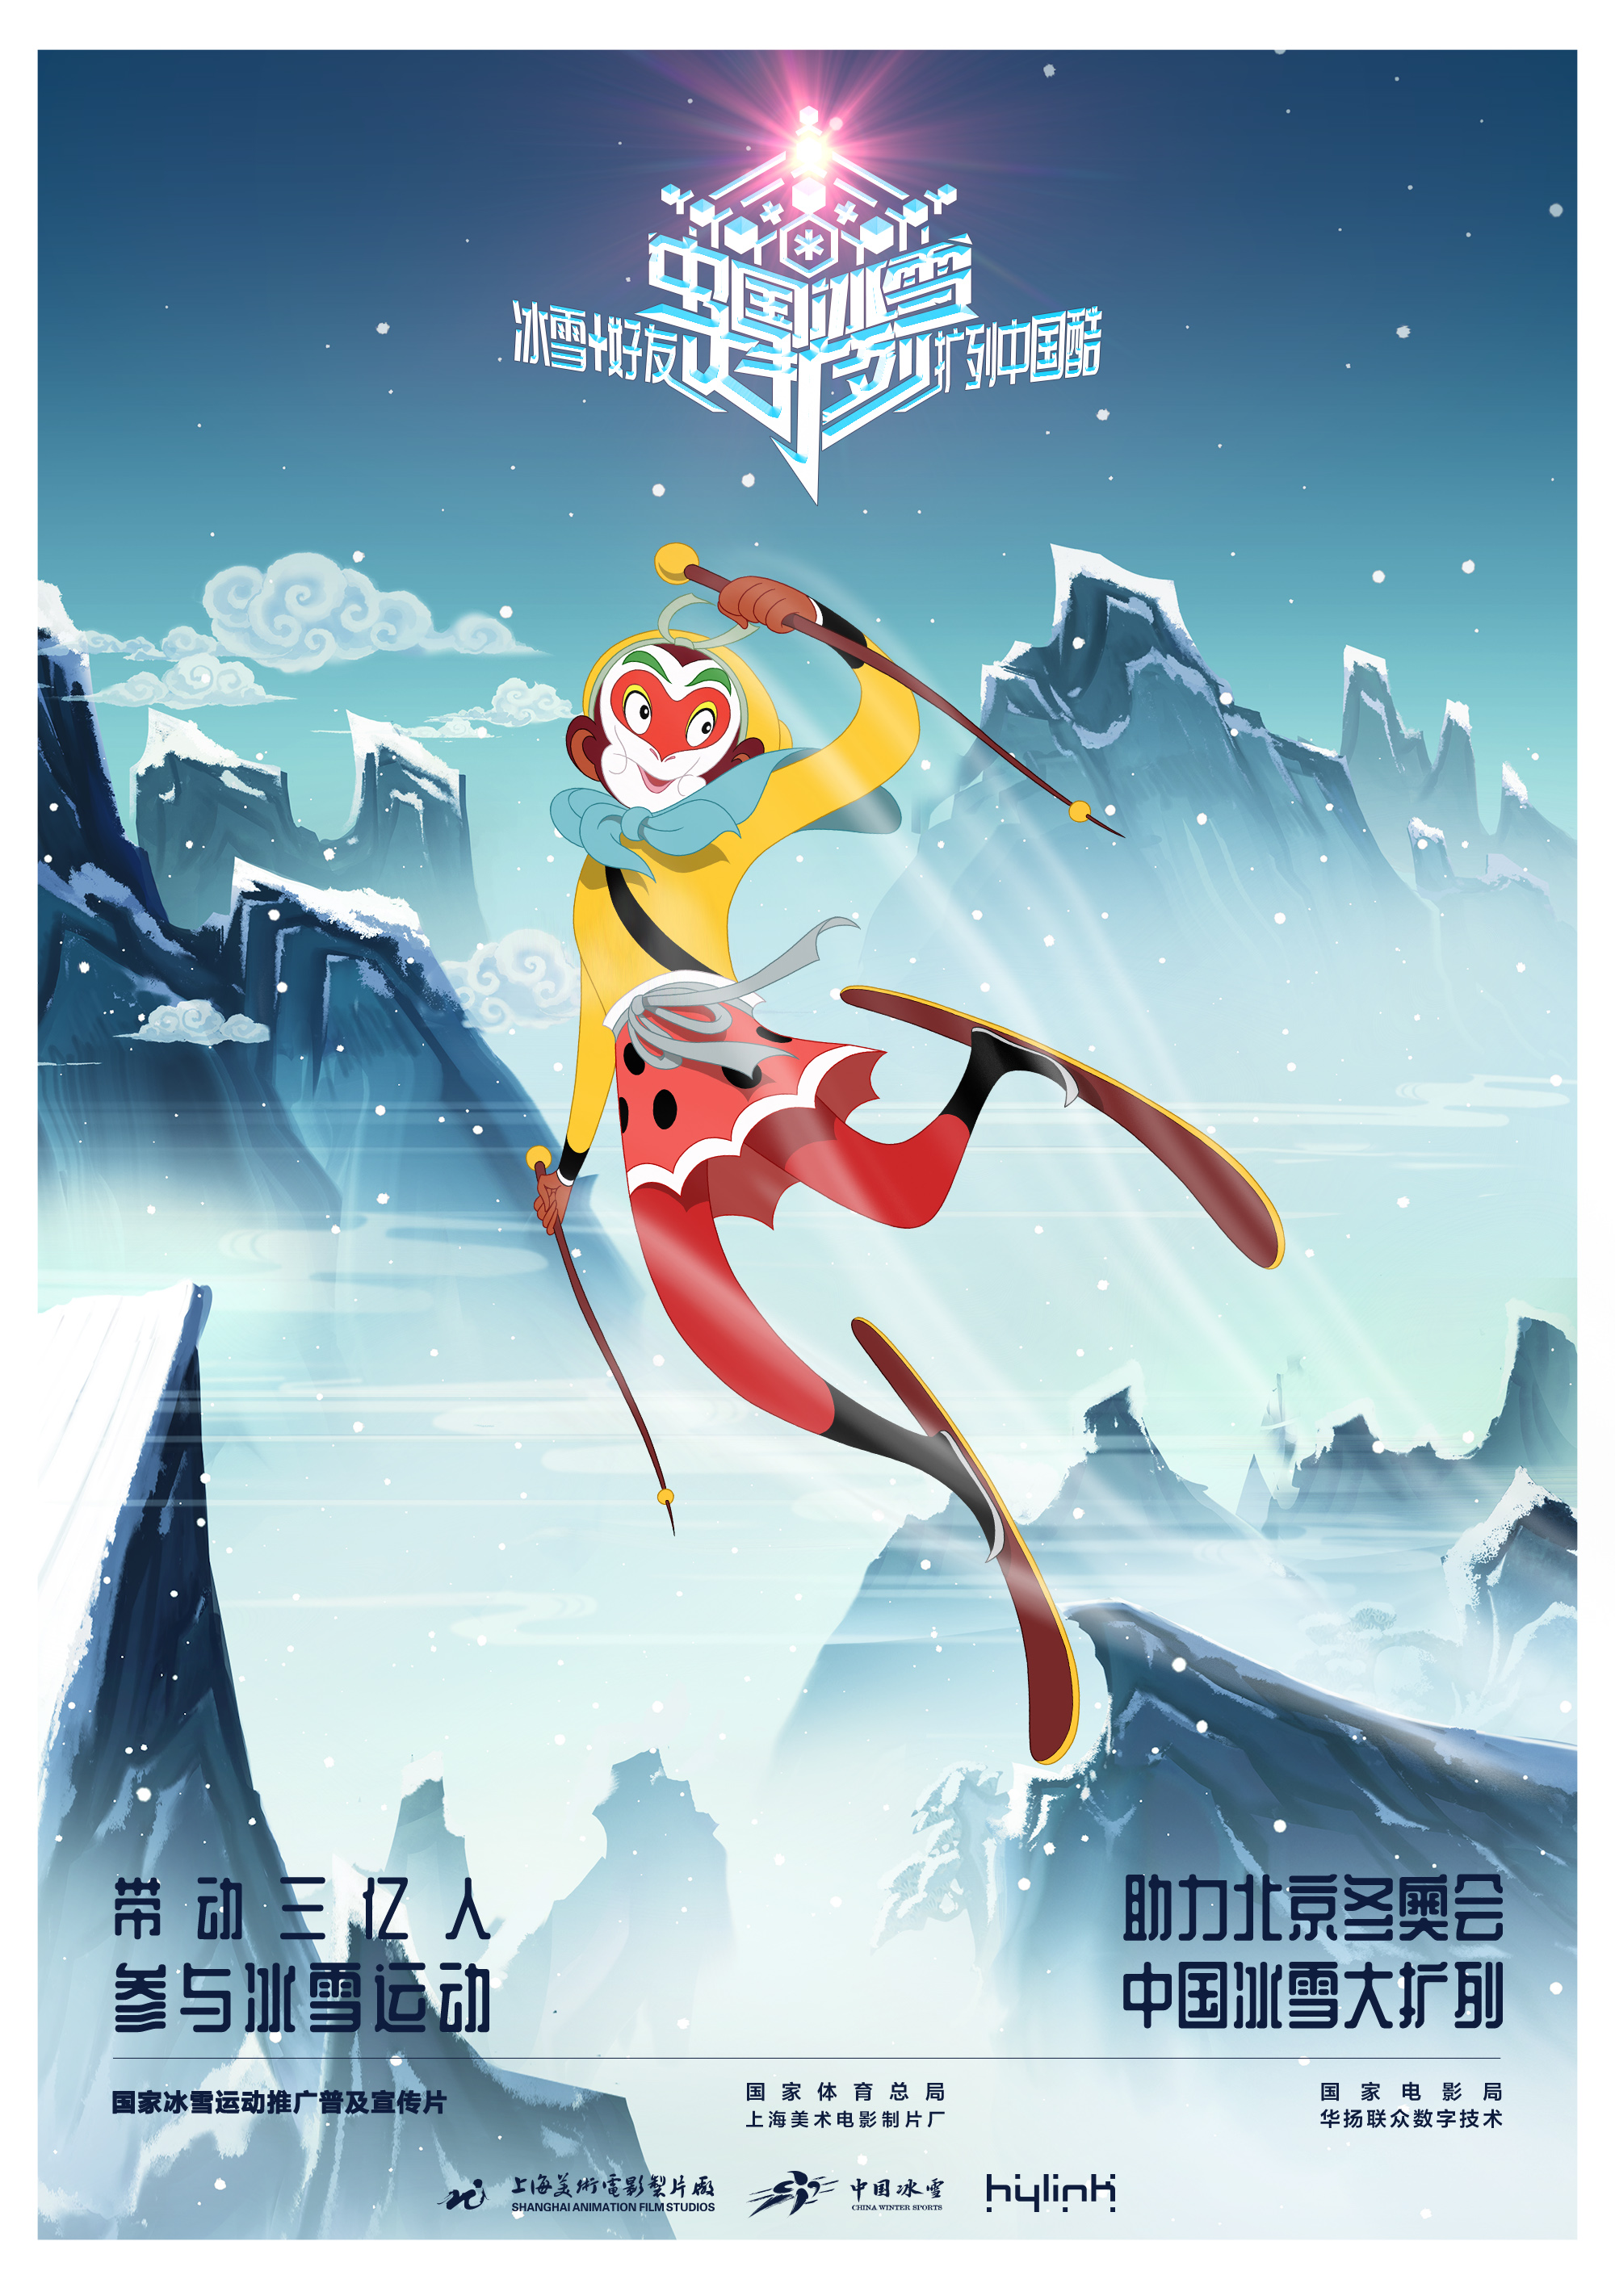 《中国冰雪大扩列》助力北京冬奥会,童年好伙伴都来了